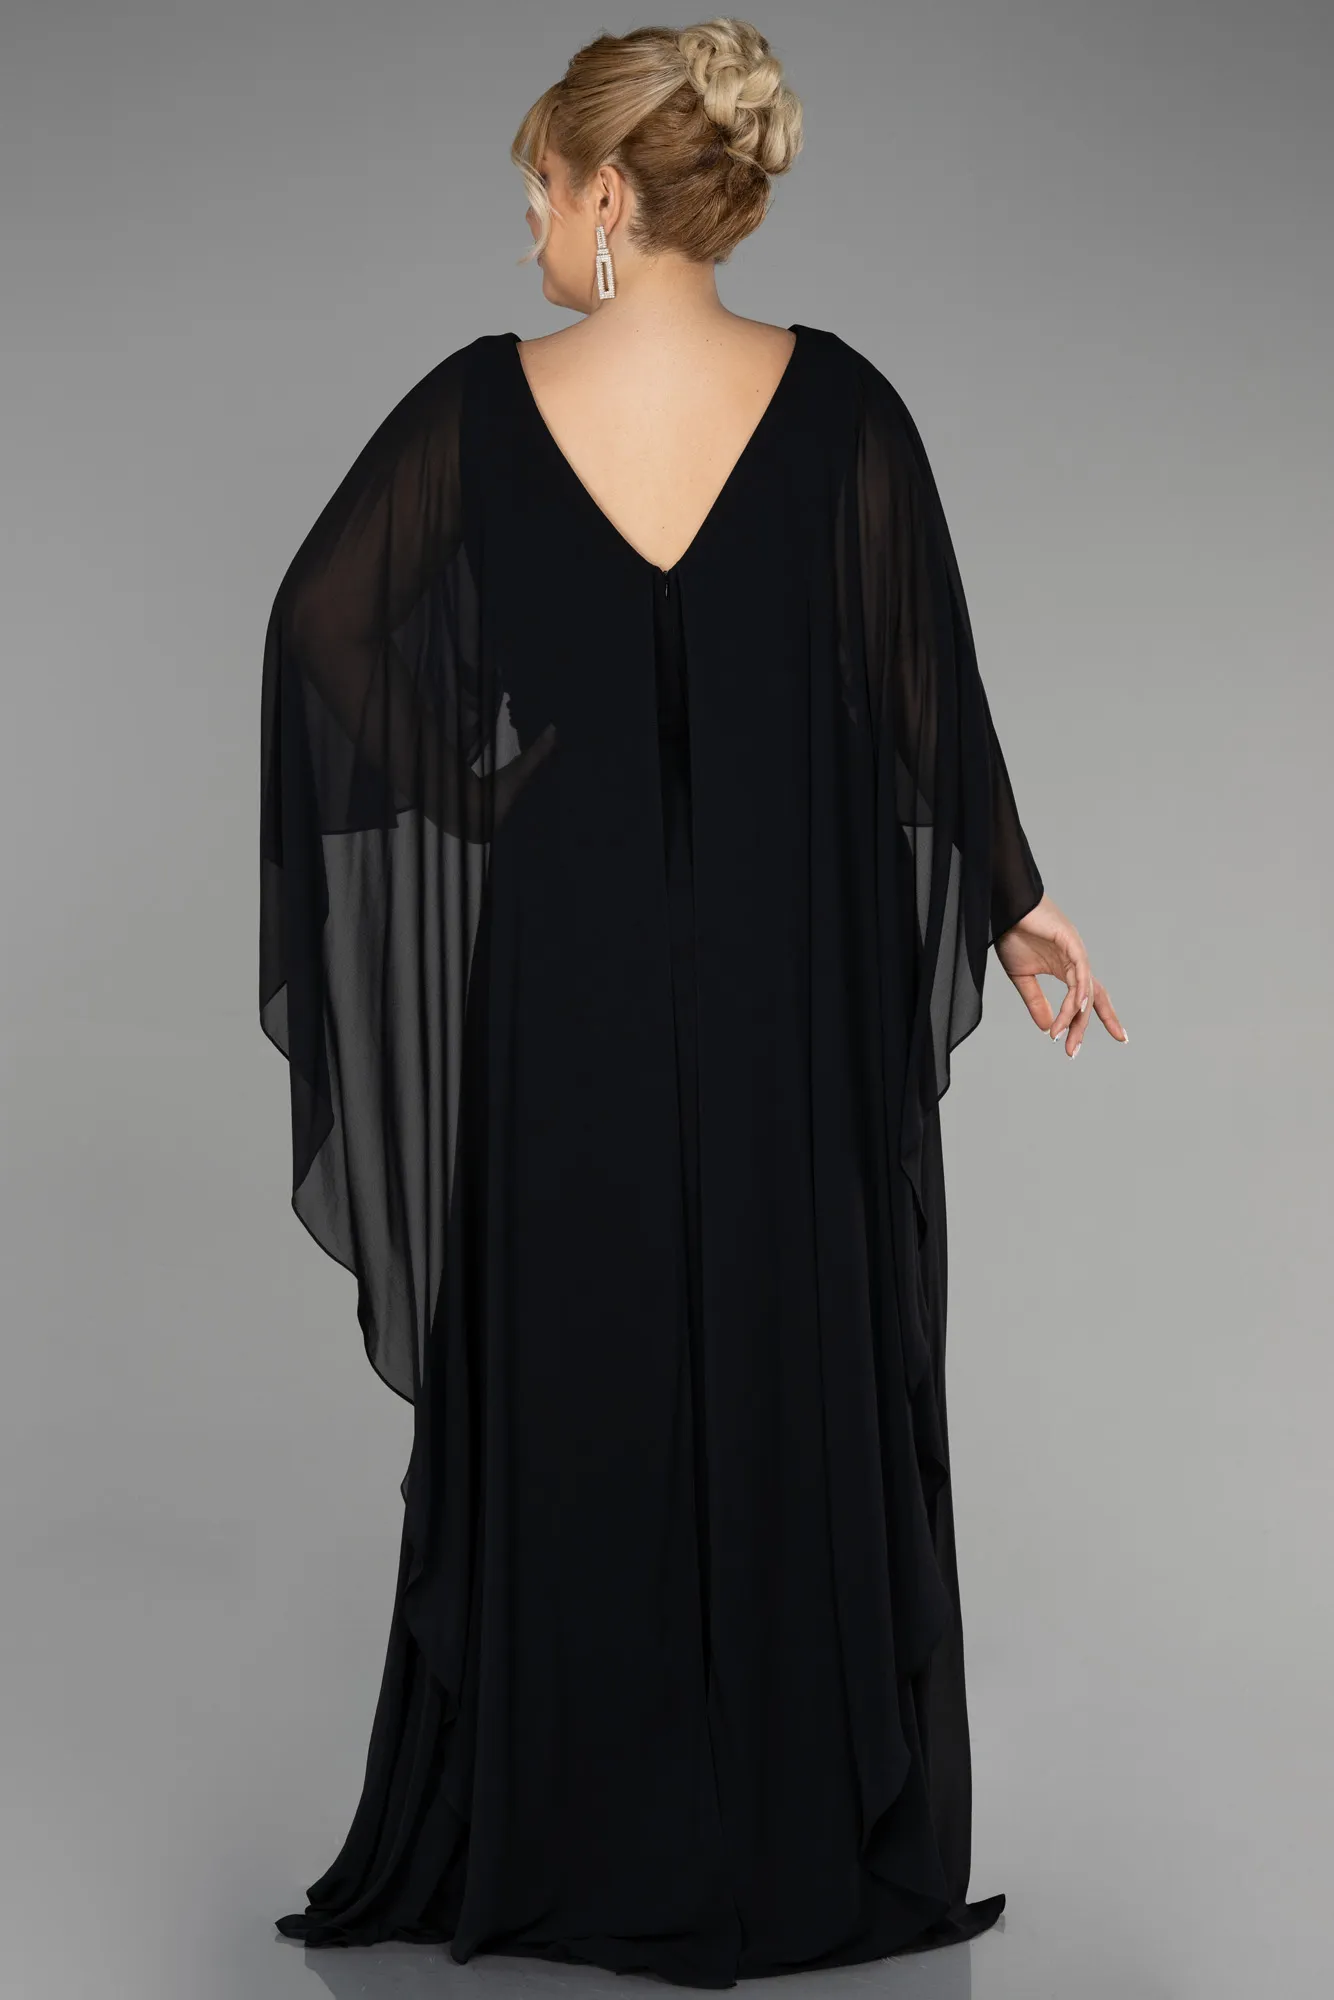 Black-Long Chiffon Plus Size Evening Dress ABU3488